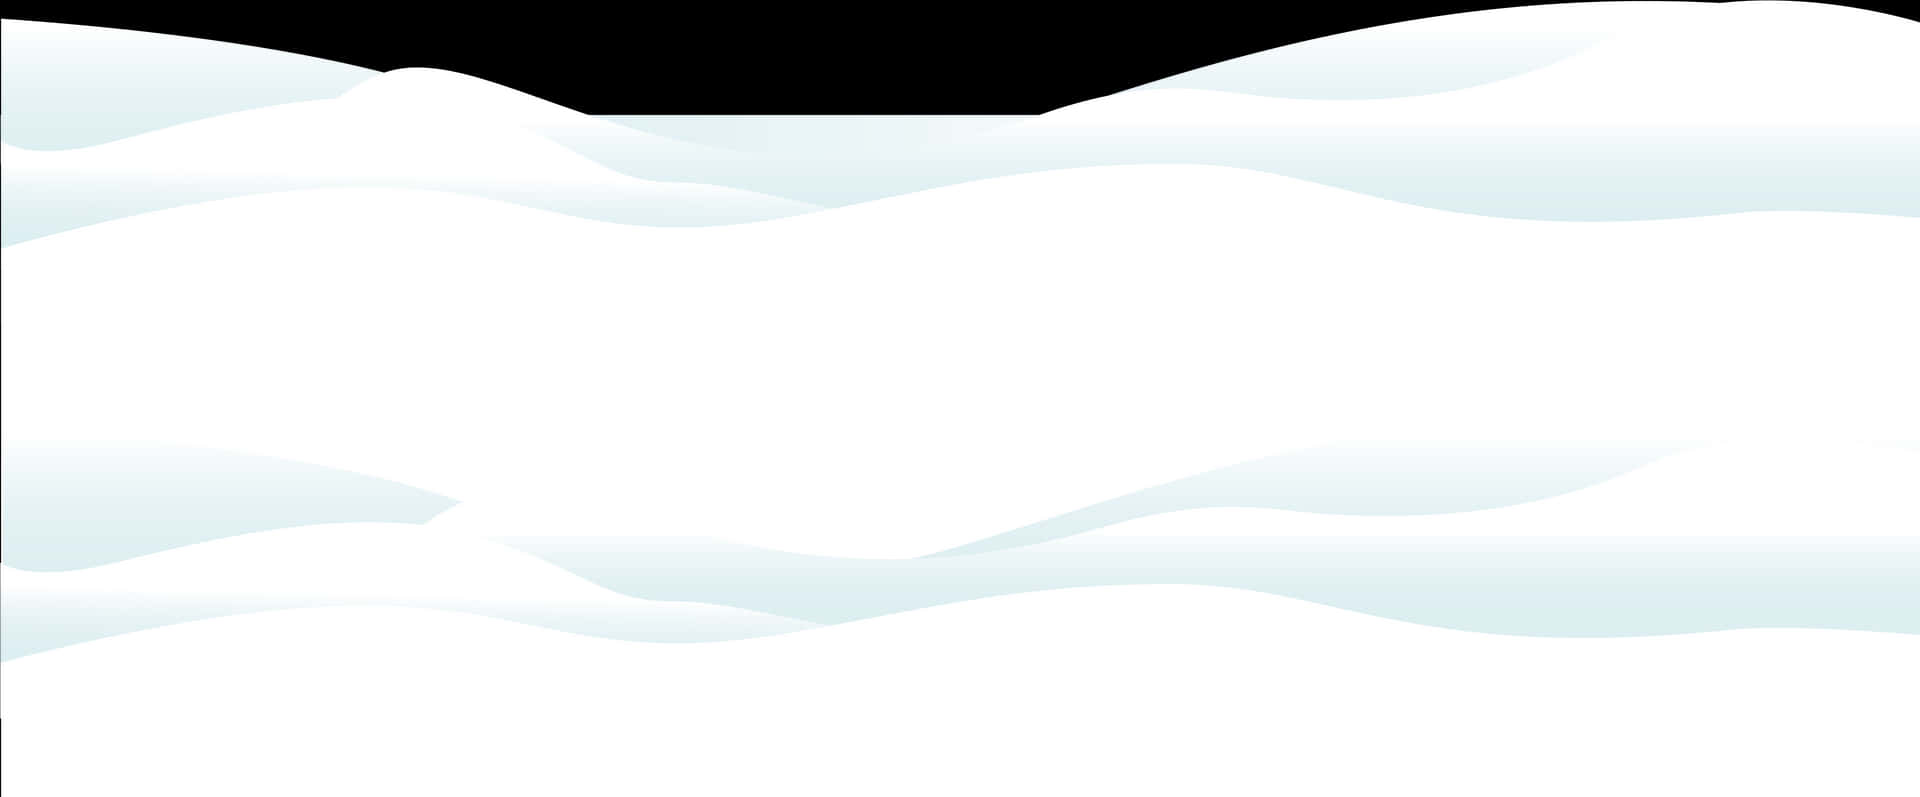 Snowy Landscape Vector Illustration PNG image